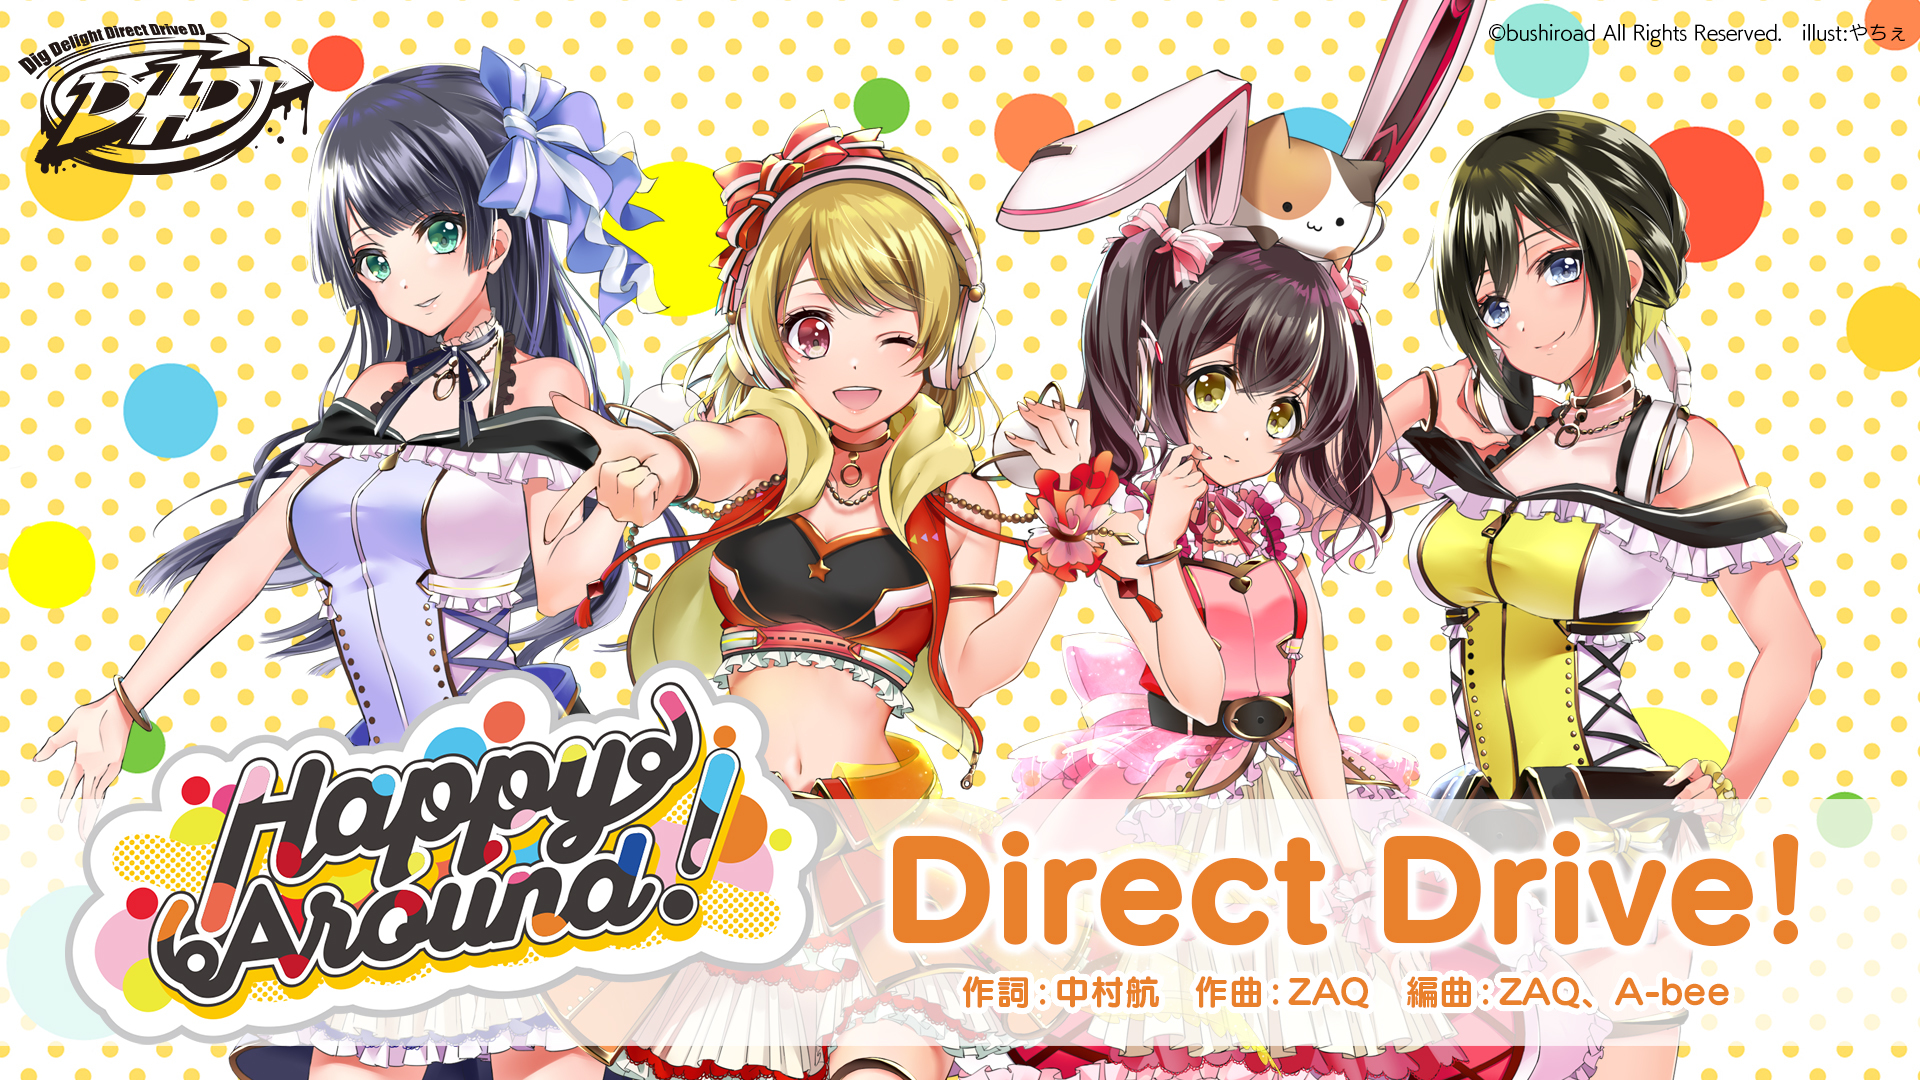 D4DJ 発のユニット「Happy Around!」のオリジナル楽曲「Direct Drive!」